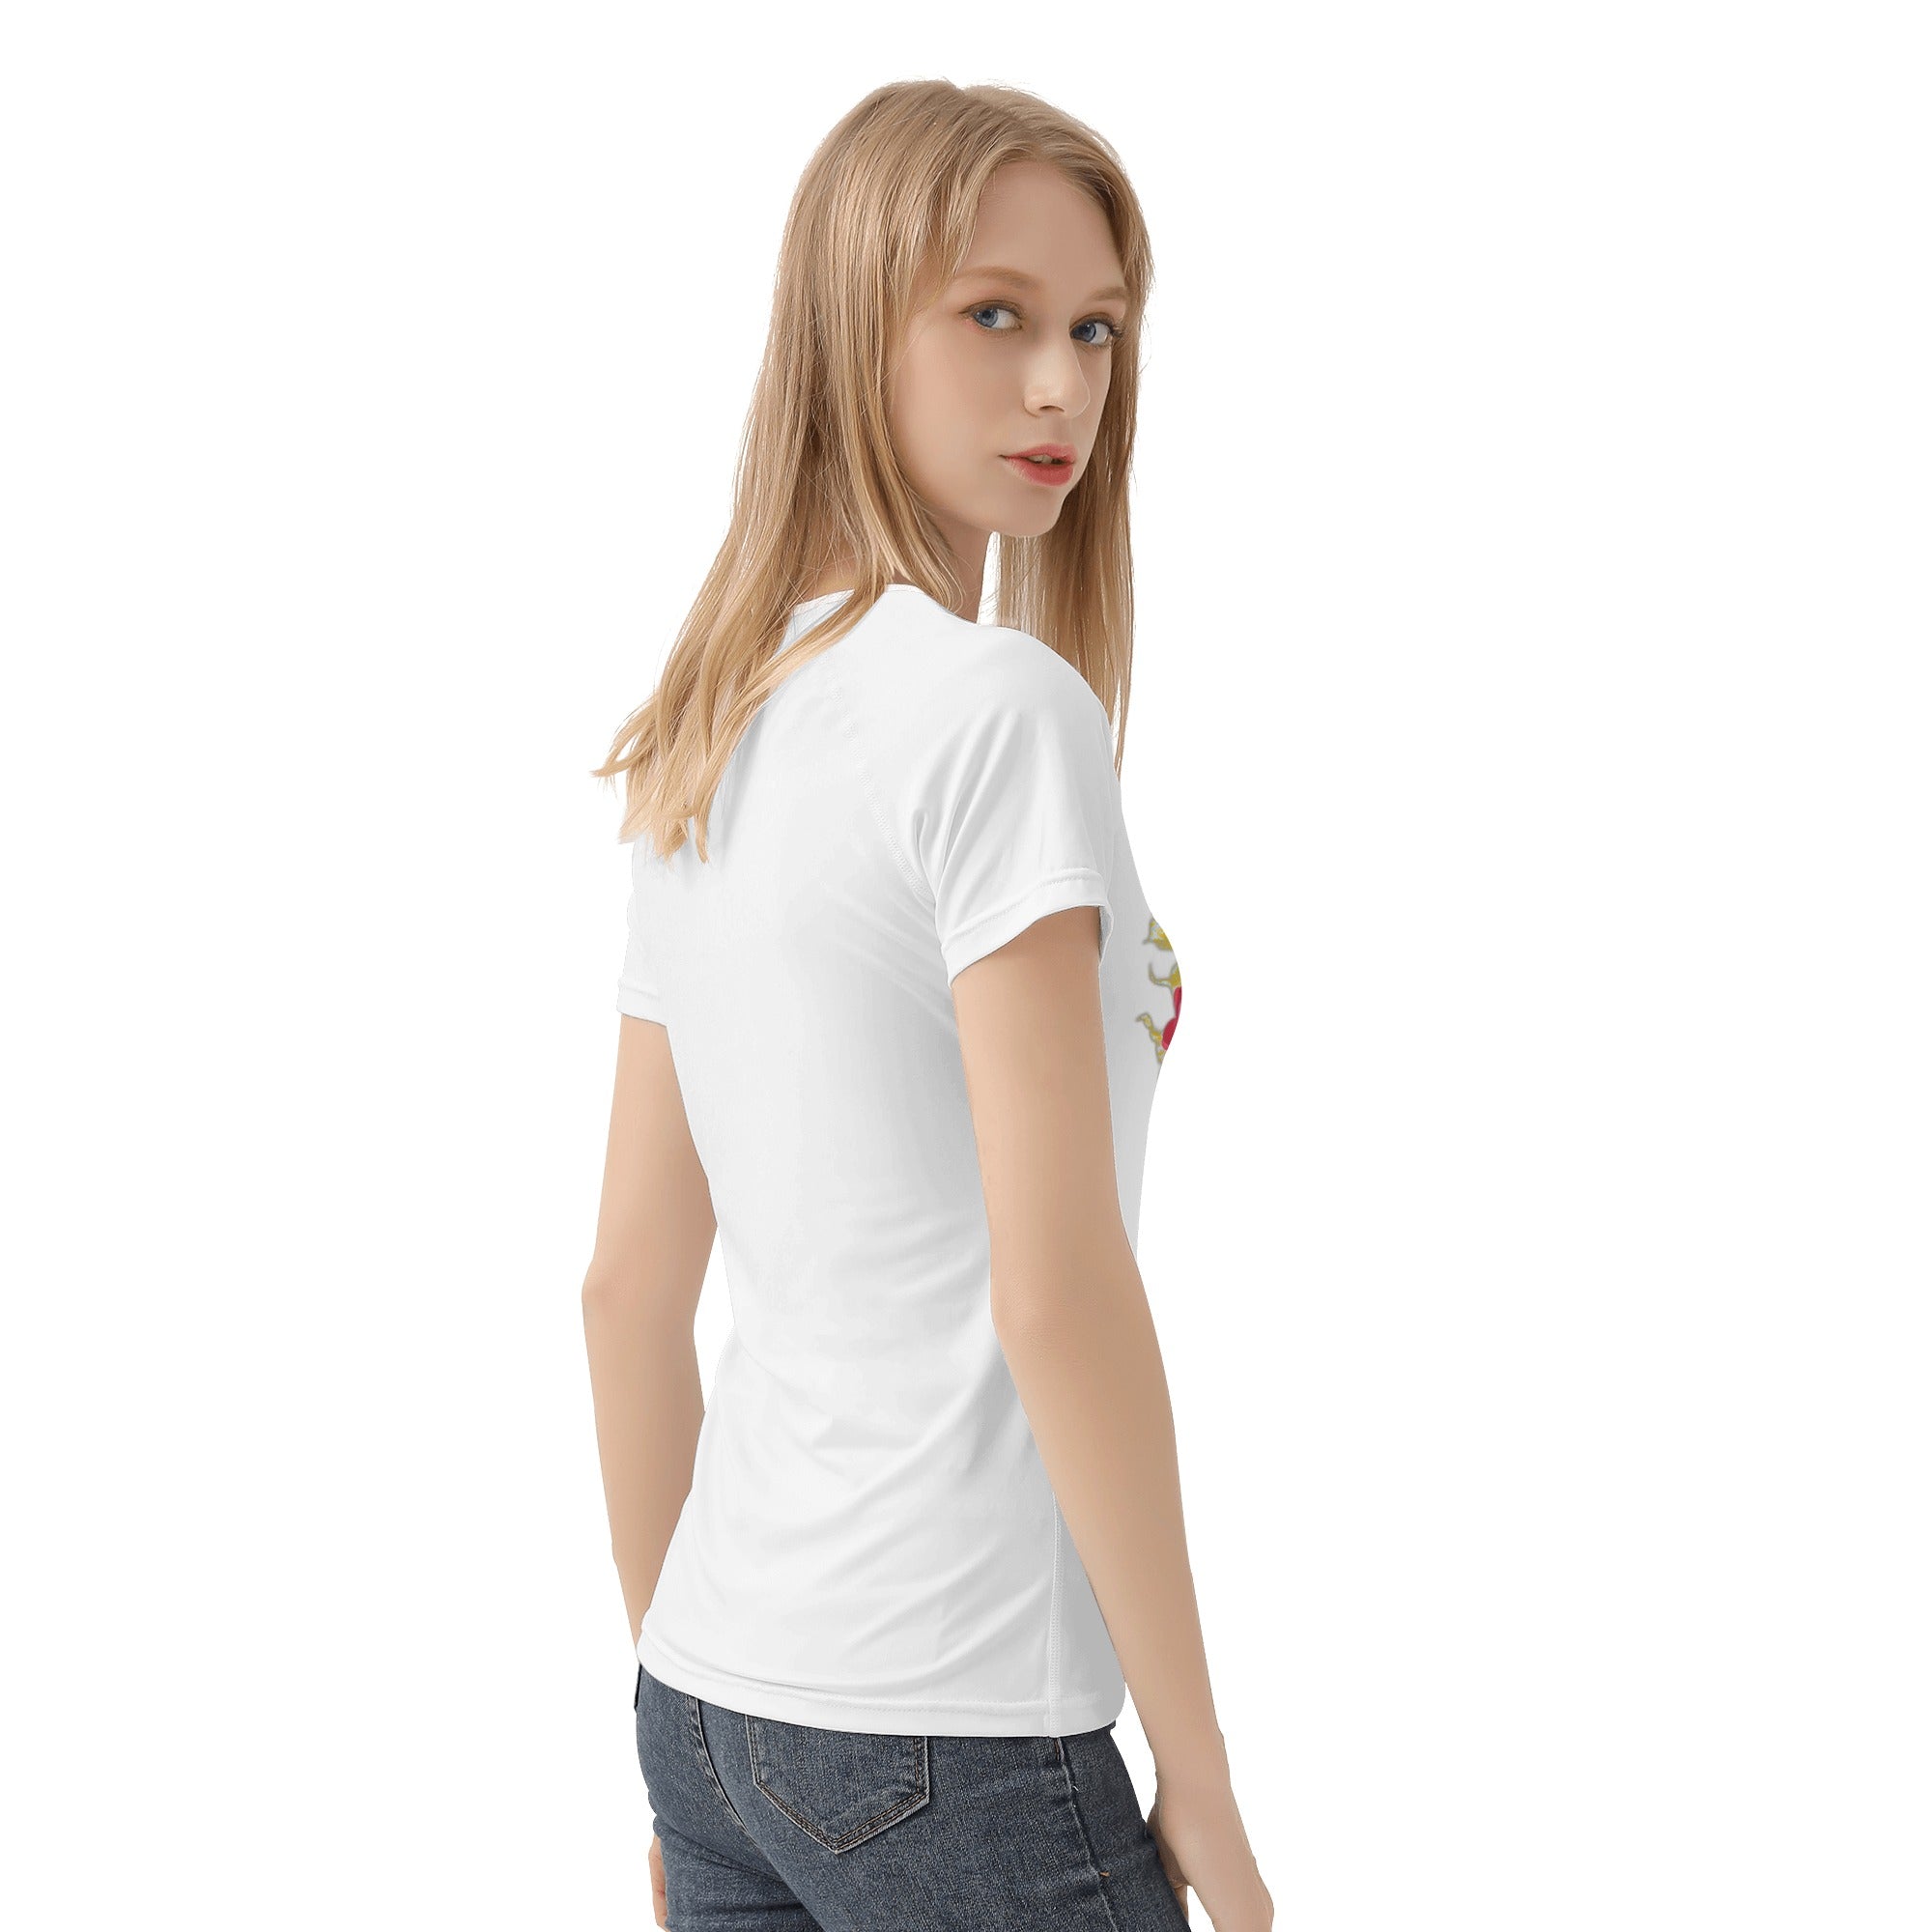 Women's All-Over Print T shirt - Single Track Dreamer